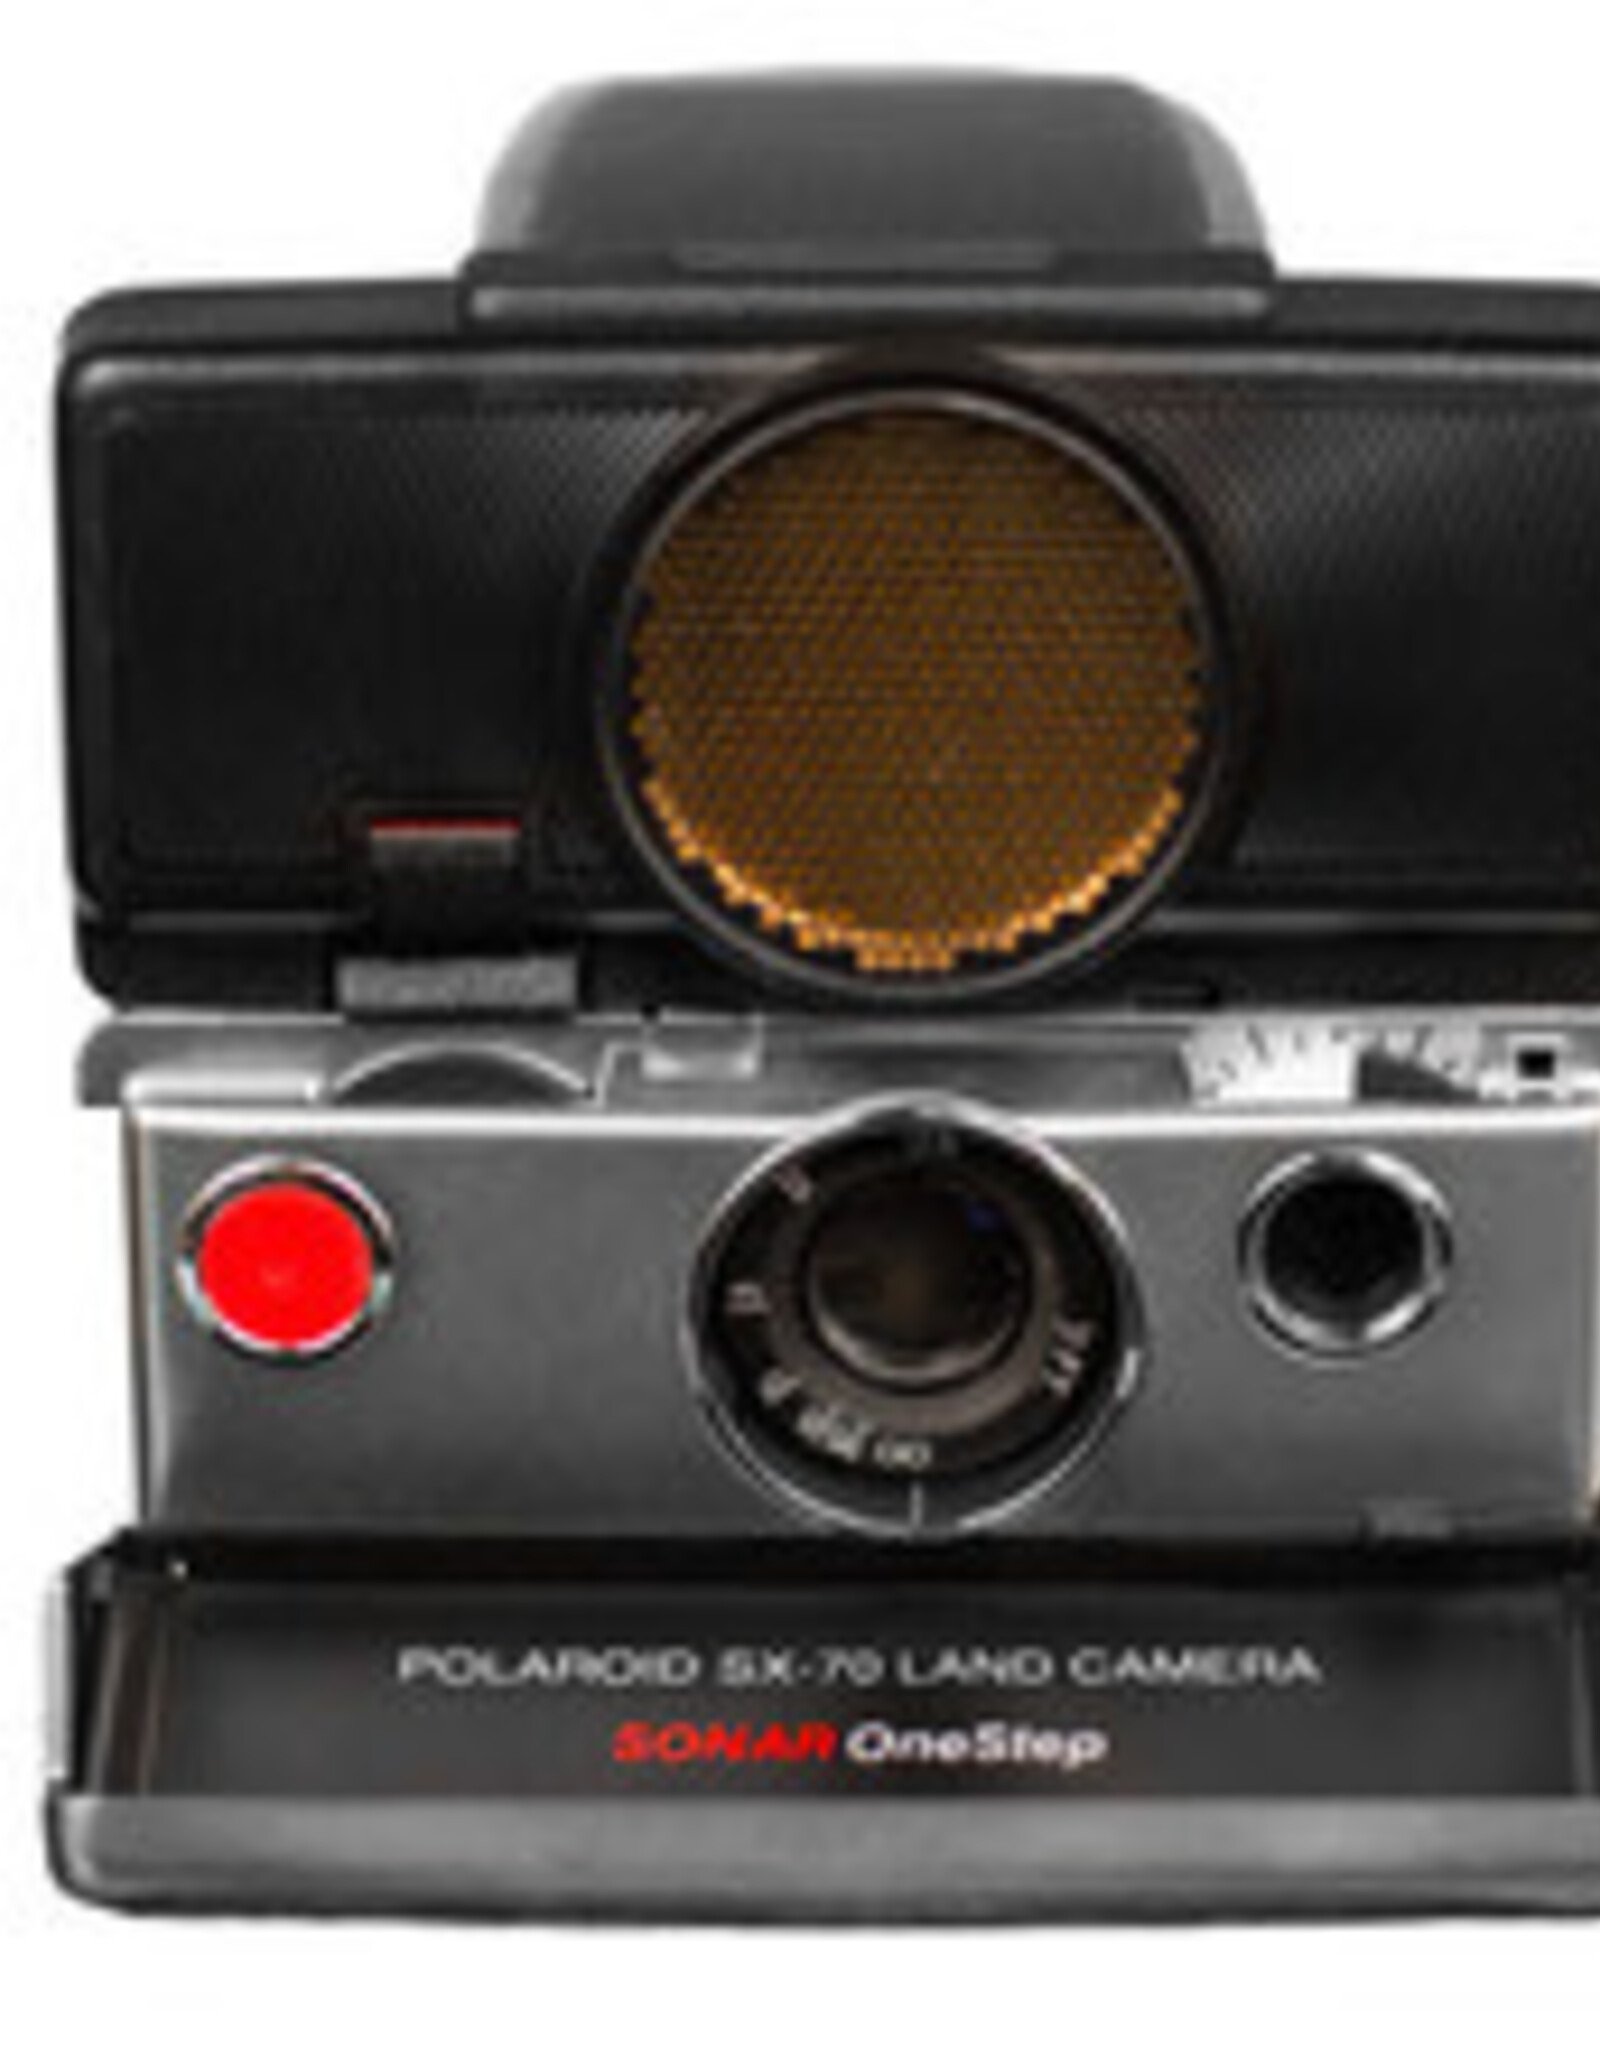 Polaroid Polaroid SX-70 Stainless/Black Sonar Instant Camera